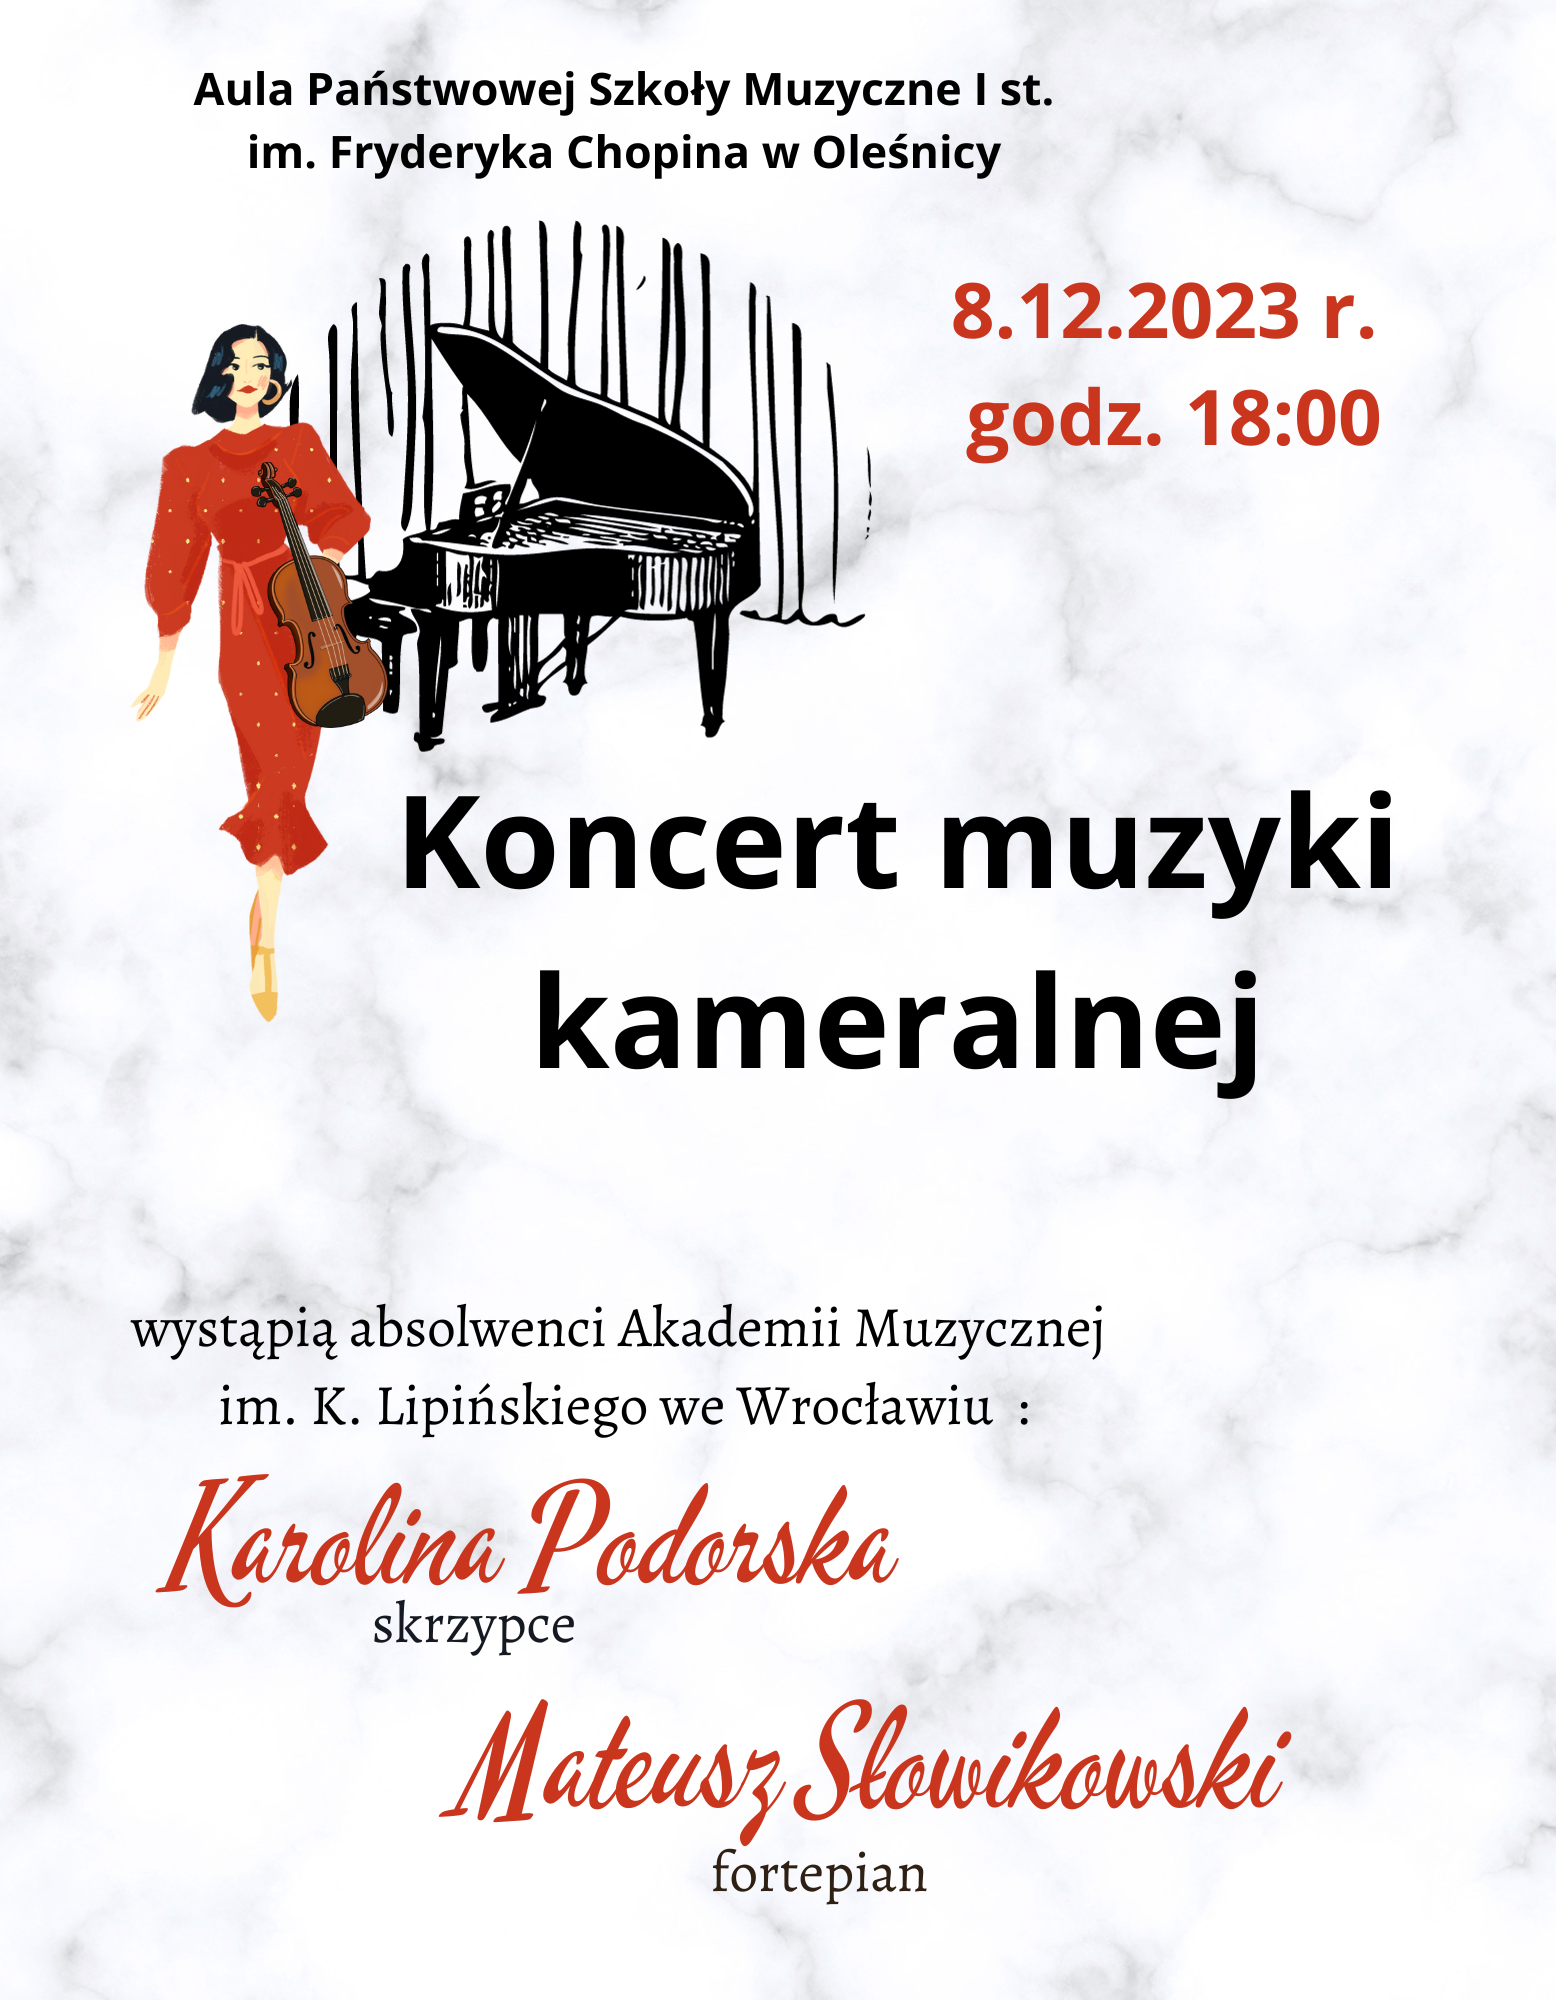 koncert muzyki kameralnej 8.12.2023 r.